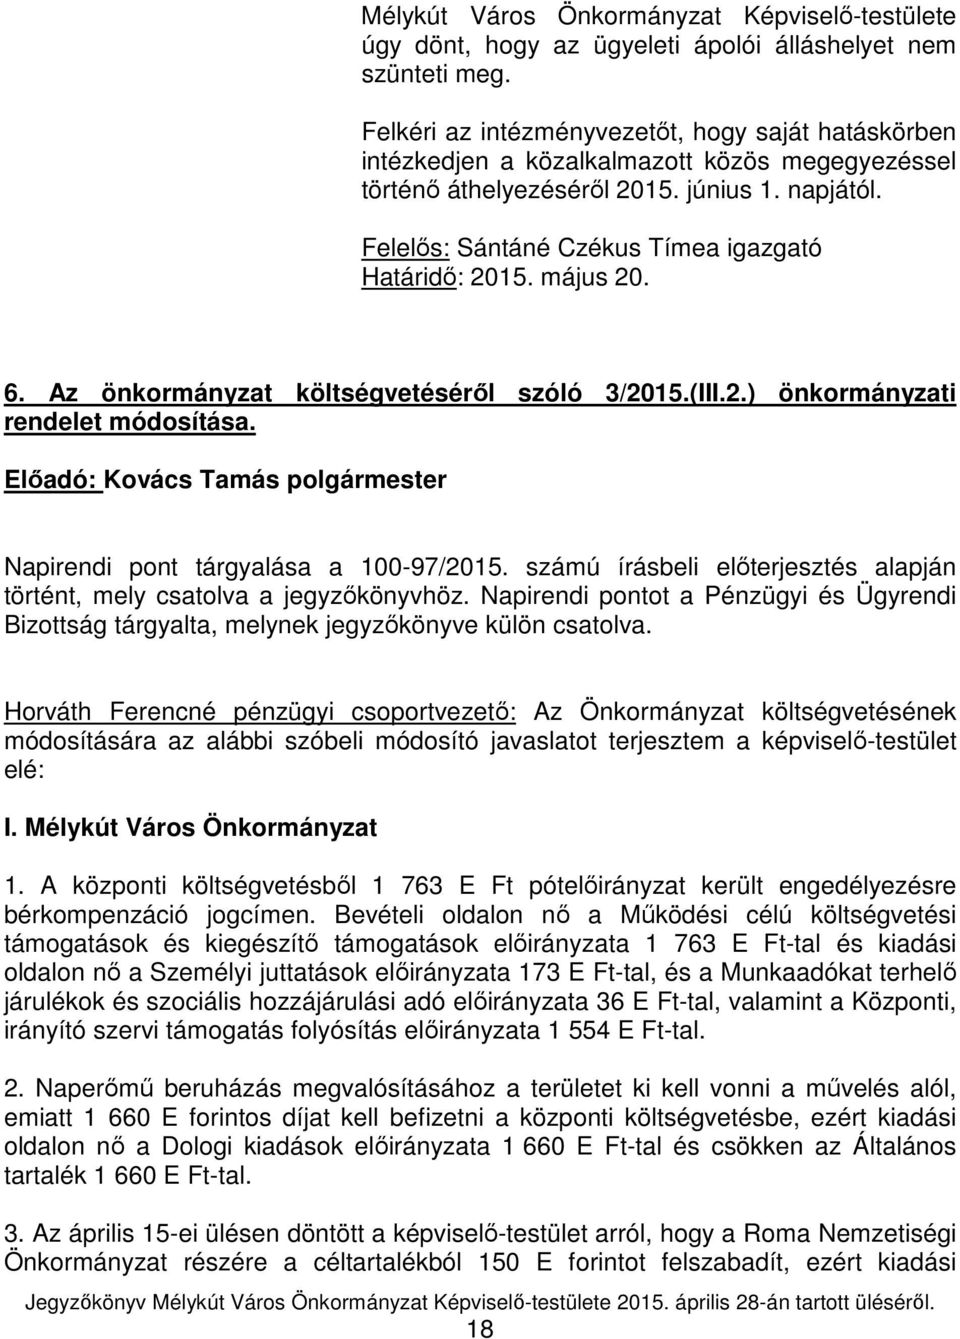 Felelős: Sántáné Czékus Tímea igazgató Határidő: 2015. május 20. 6. Az önkormányzat költségvetéséről szóló 3/2015.(III.2.) önkormányzati rendelet módosítása.